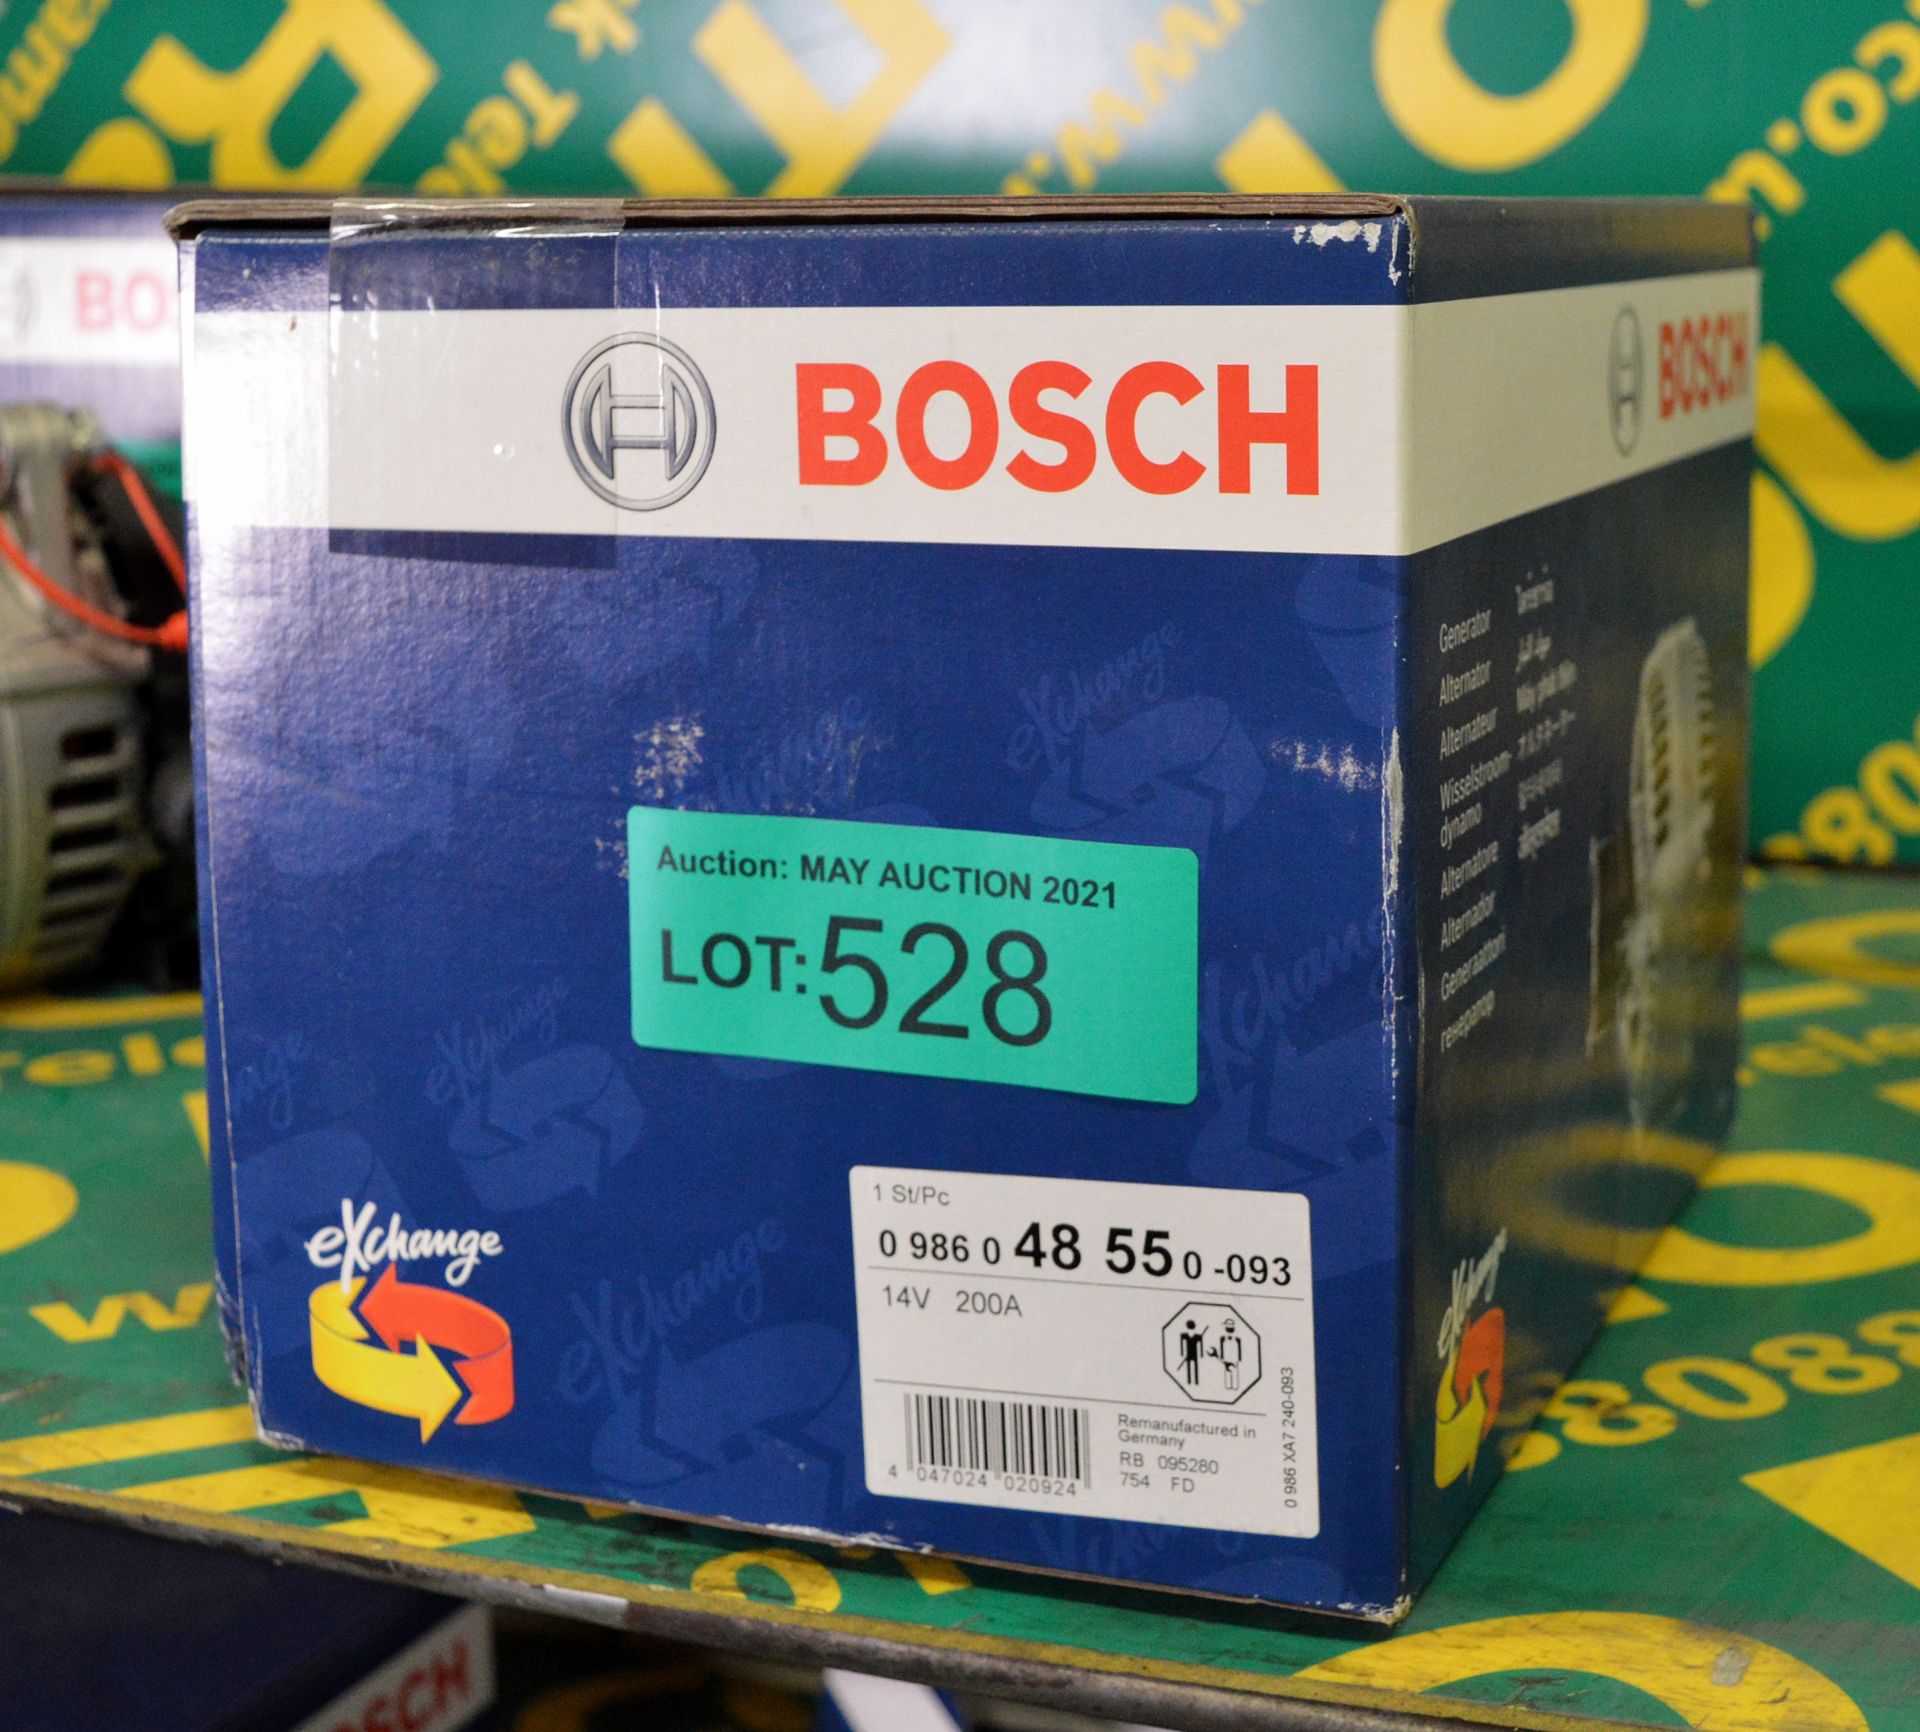 Bosch 48 55 - 14V 200A Alternator